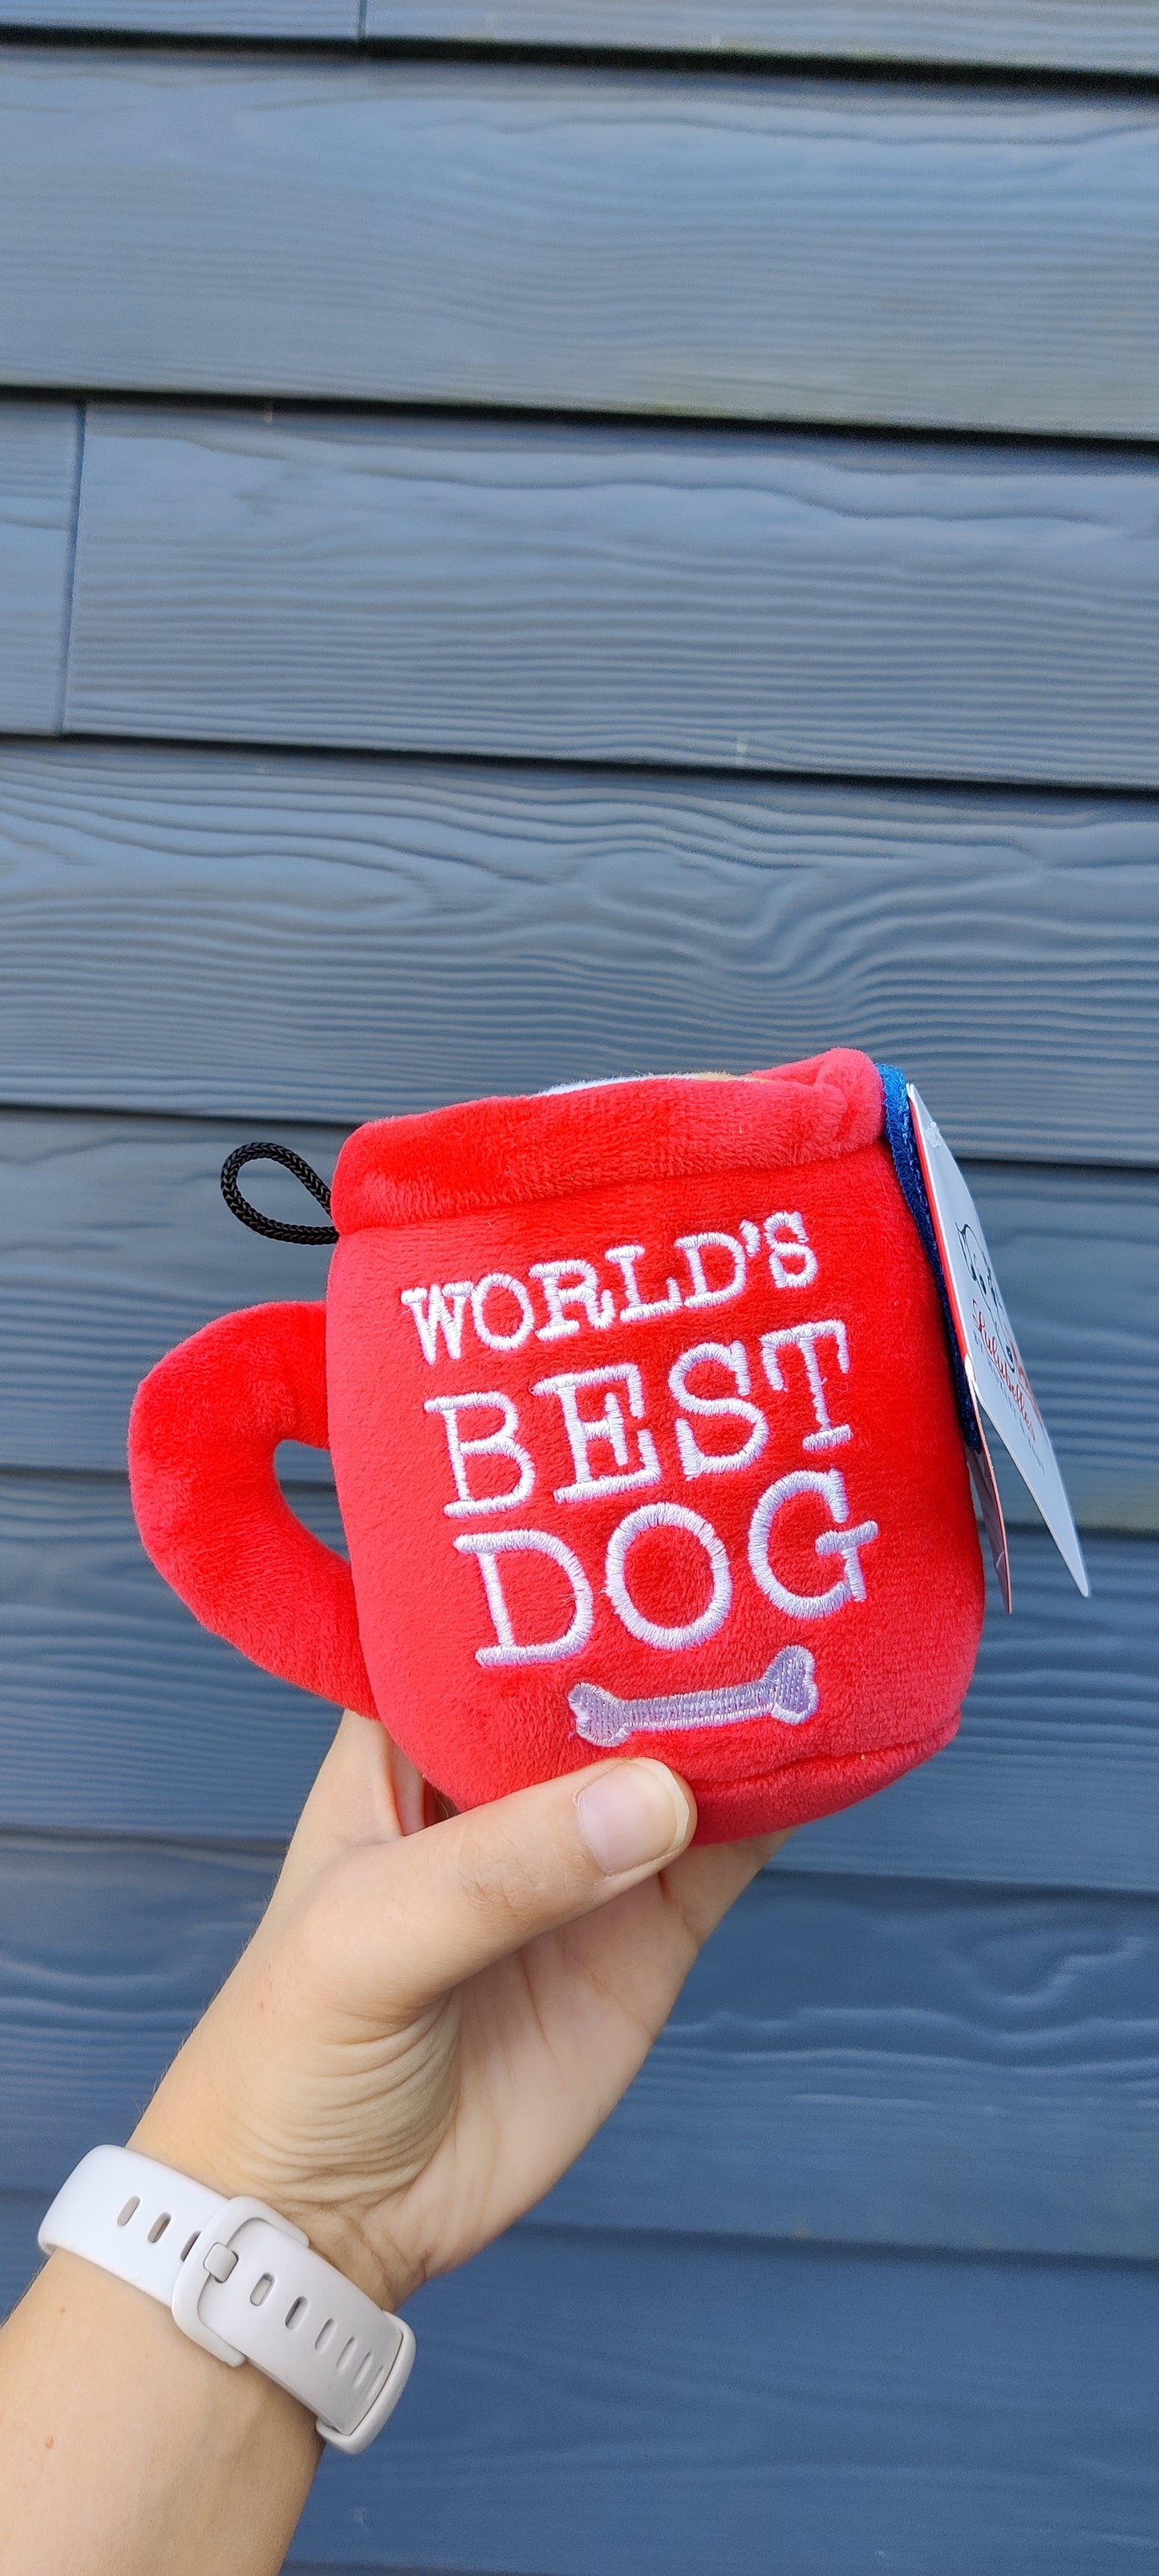 Lulubelles - World's Best Dog | Werelddierendag knuffel piep sterk peelgoed hond/puppy